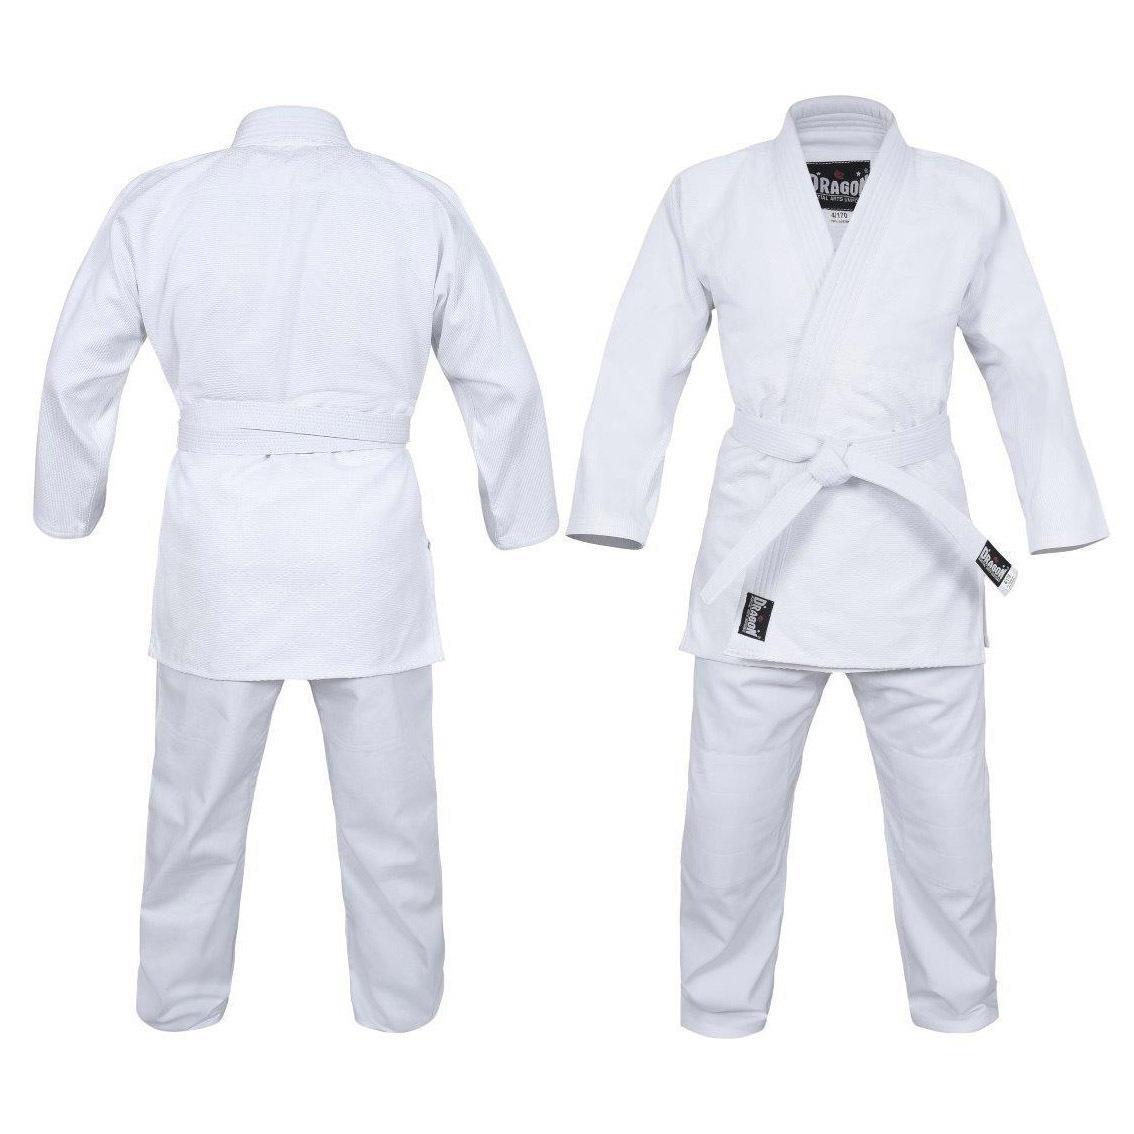 Morgan Sports Dragon Judo Uniform Gi - 1.5 Weave 550gsm - Kids & Adults Sizes